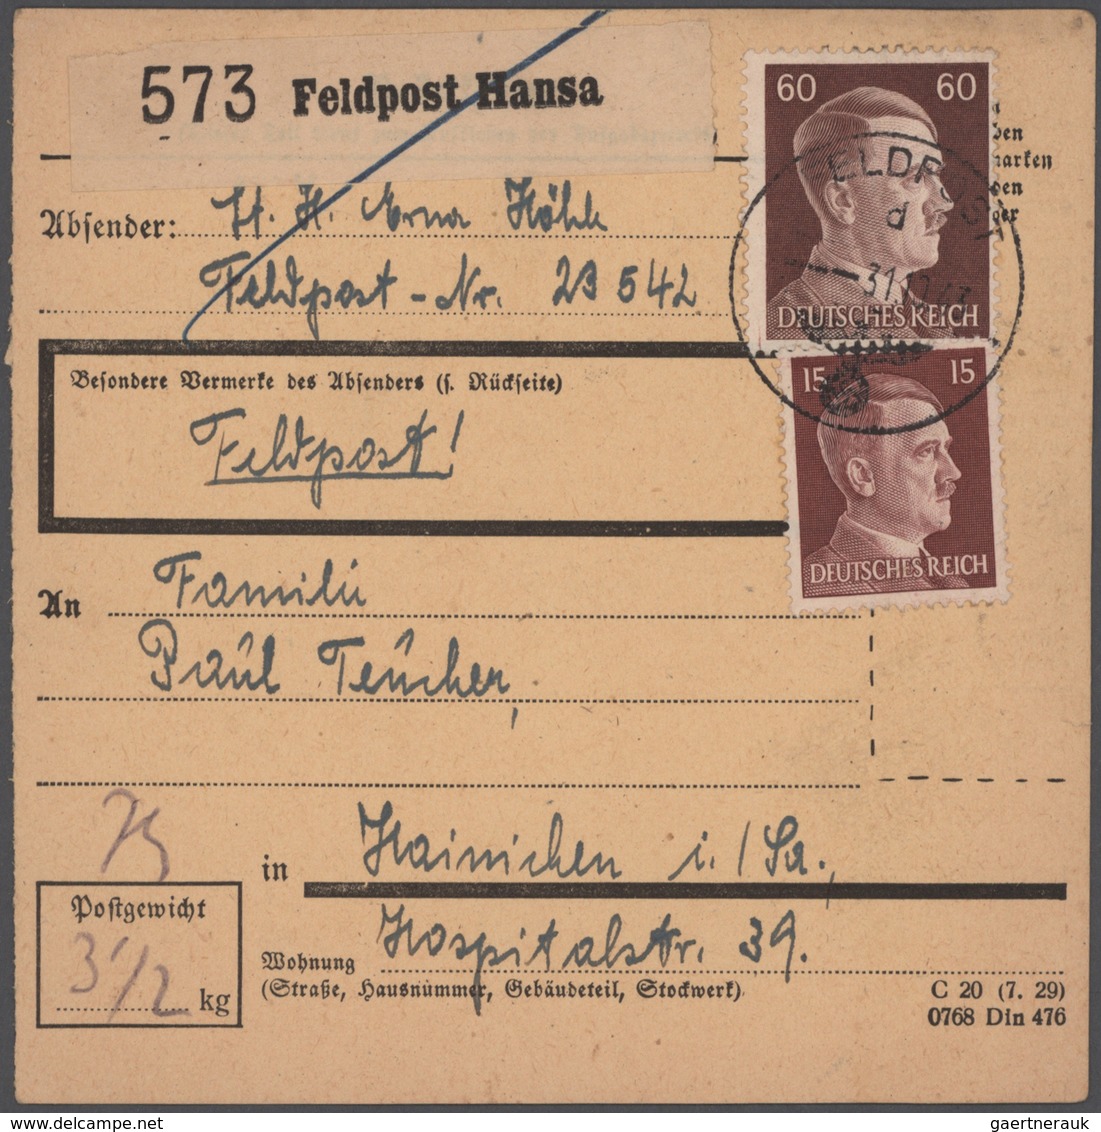 Deutsches Reich - 3. Reich: 1933/1945, werthaltiger Belege-Posten mit ca. 63 EF, MeF und MiF, dabei